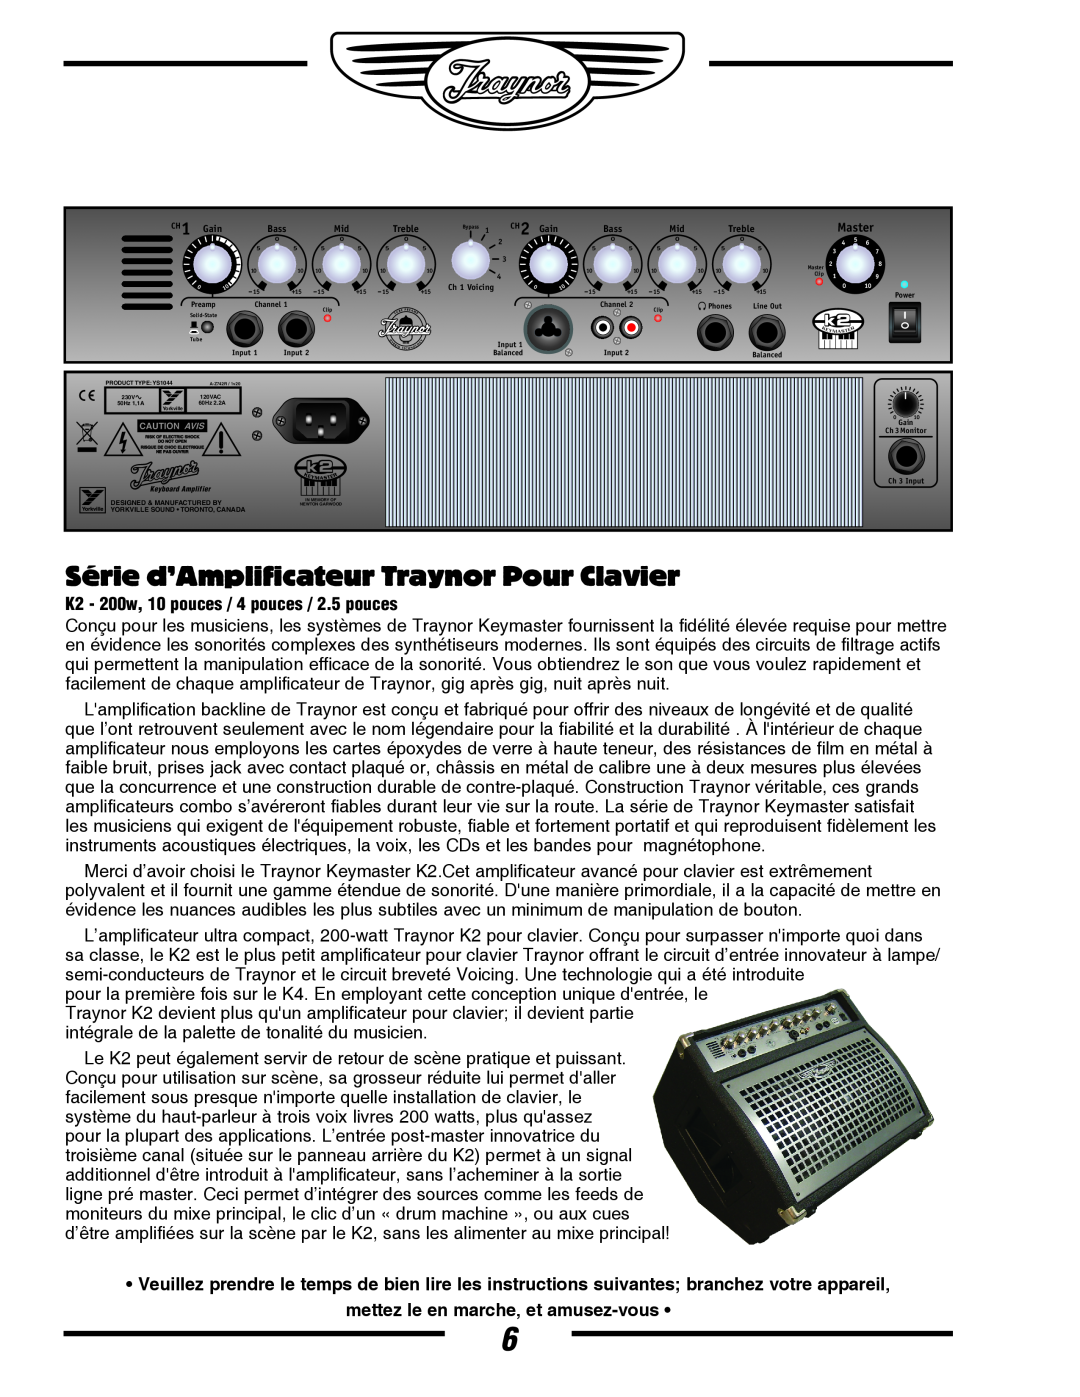 Yorkville Sound YS1044 Série d’Amplificateur Traynor Pour Clavier, K2 - 200w, 10 pouces / 4 pouces / 2.5 pouces 